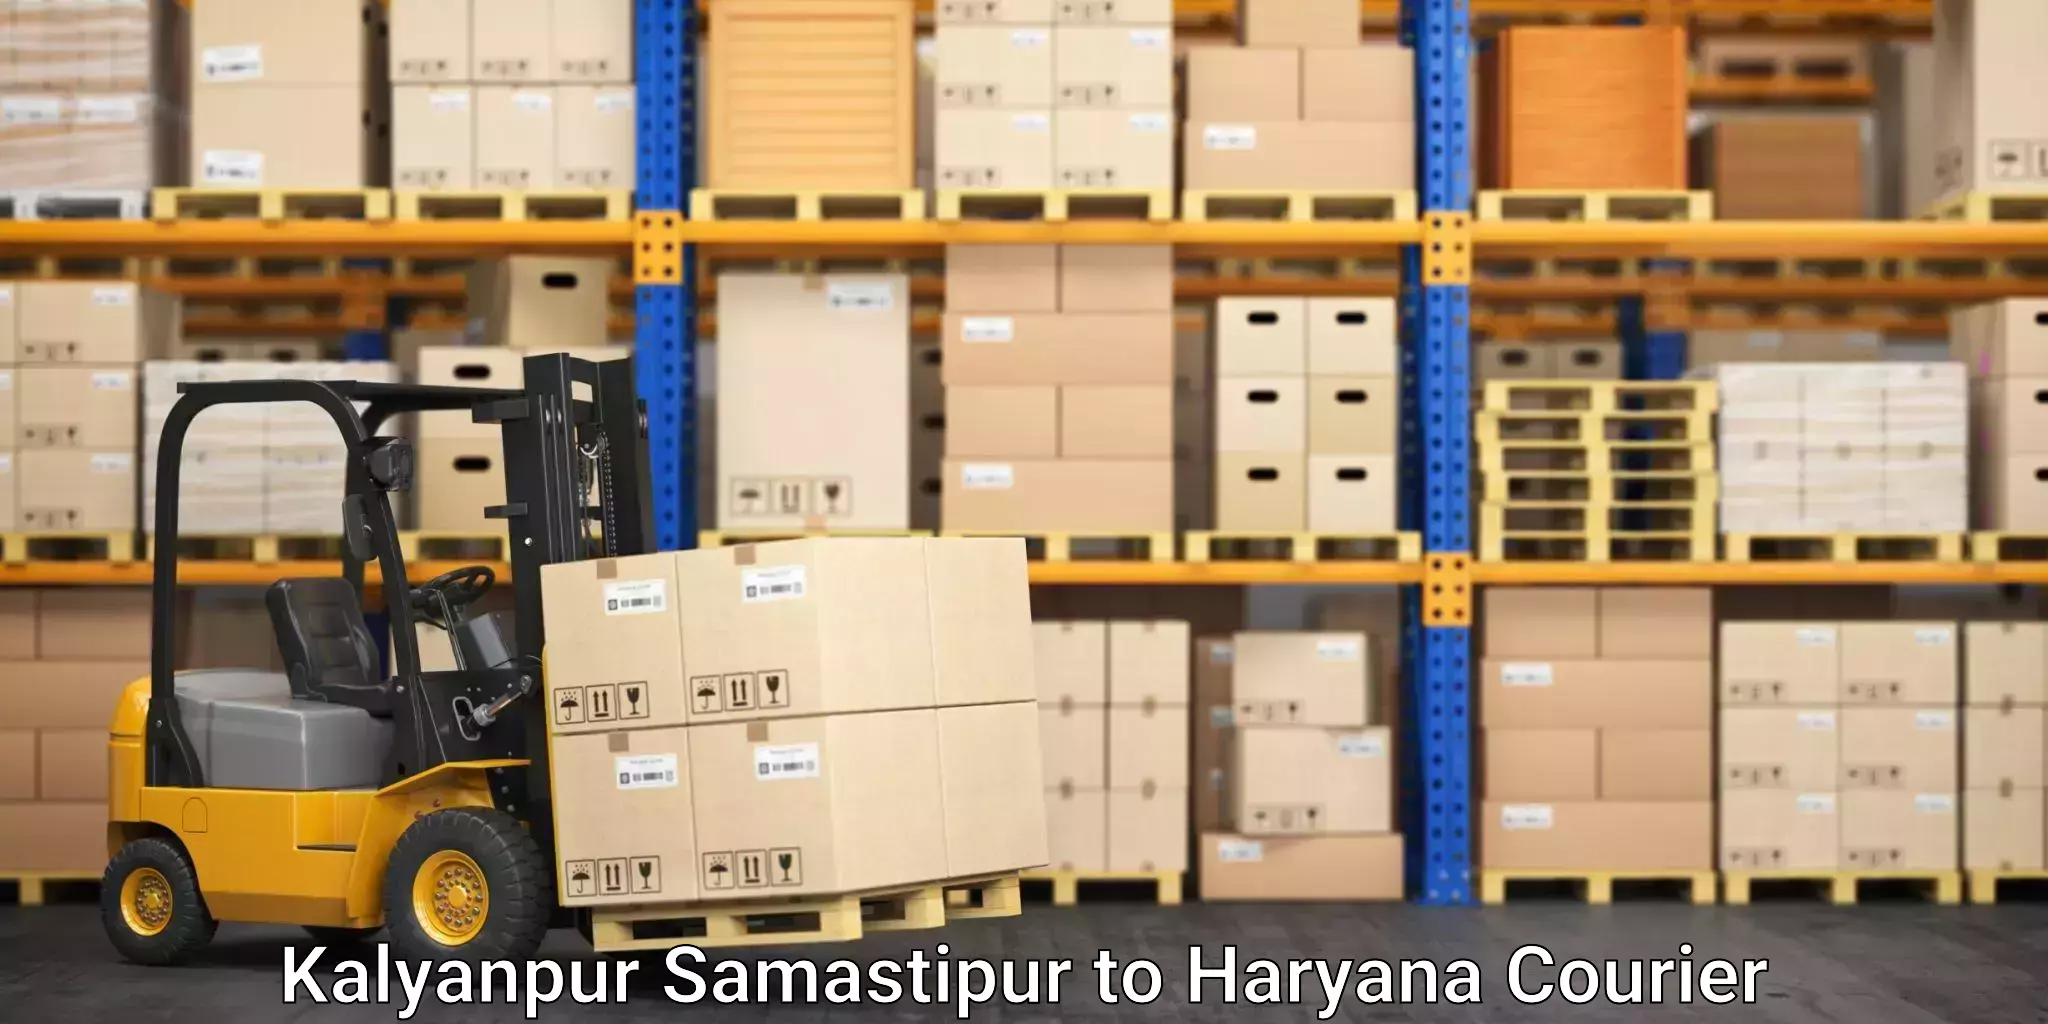 Furniture transport professionals Kalyanpur Samastipur to Chirya